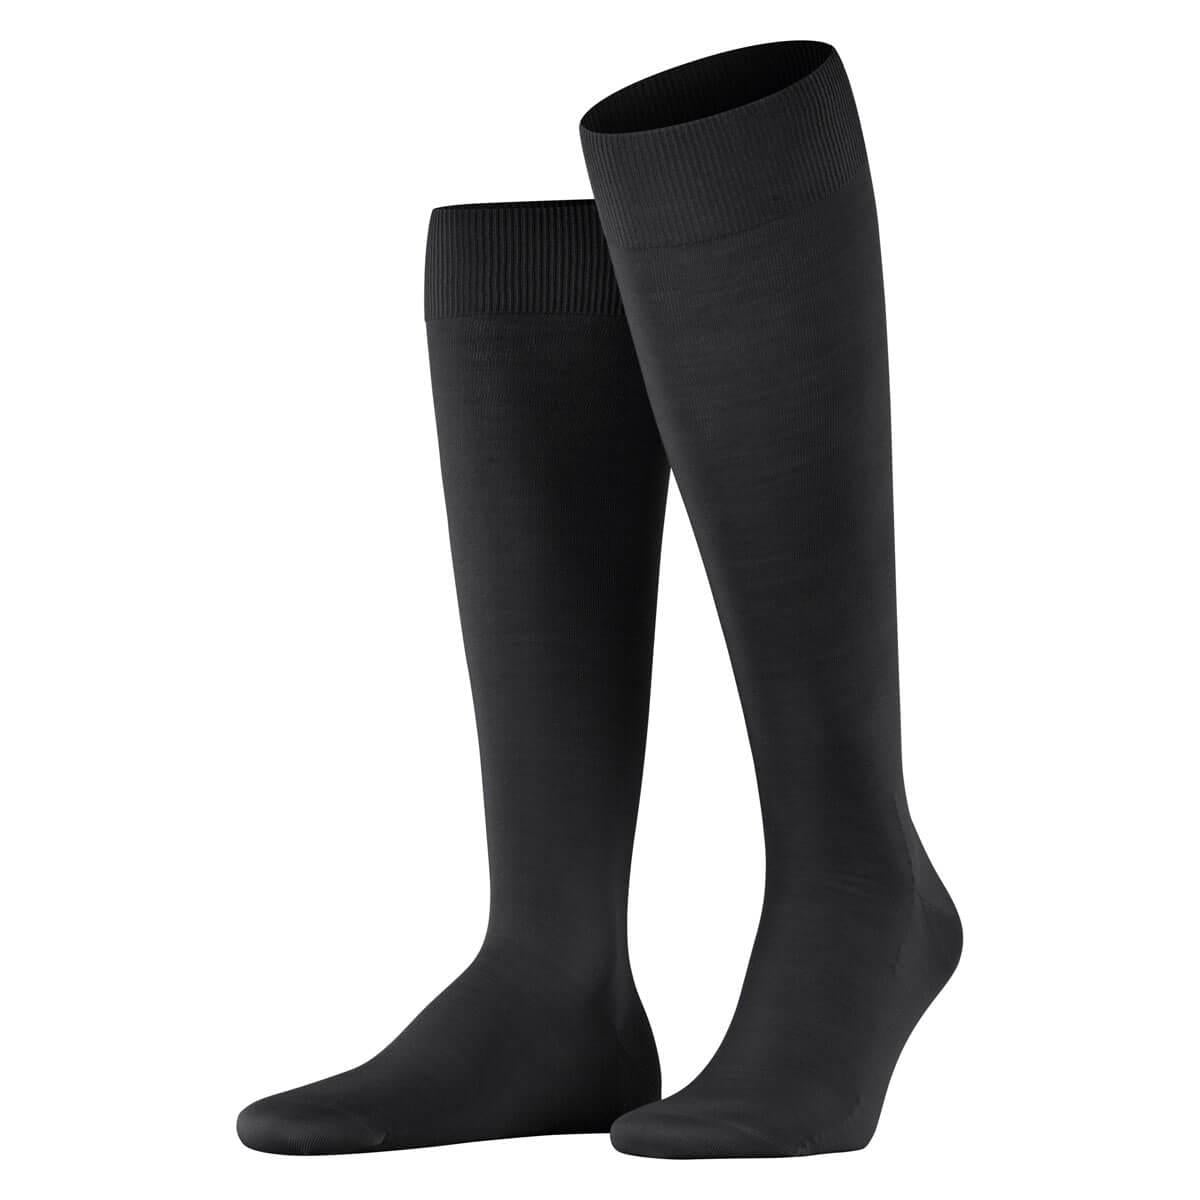 ClimaWool Knee High Socks - Men's